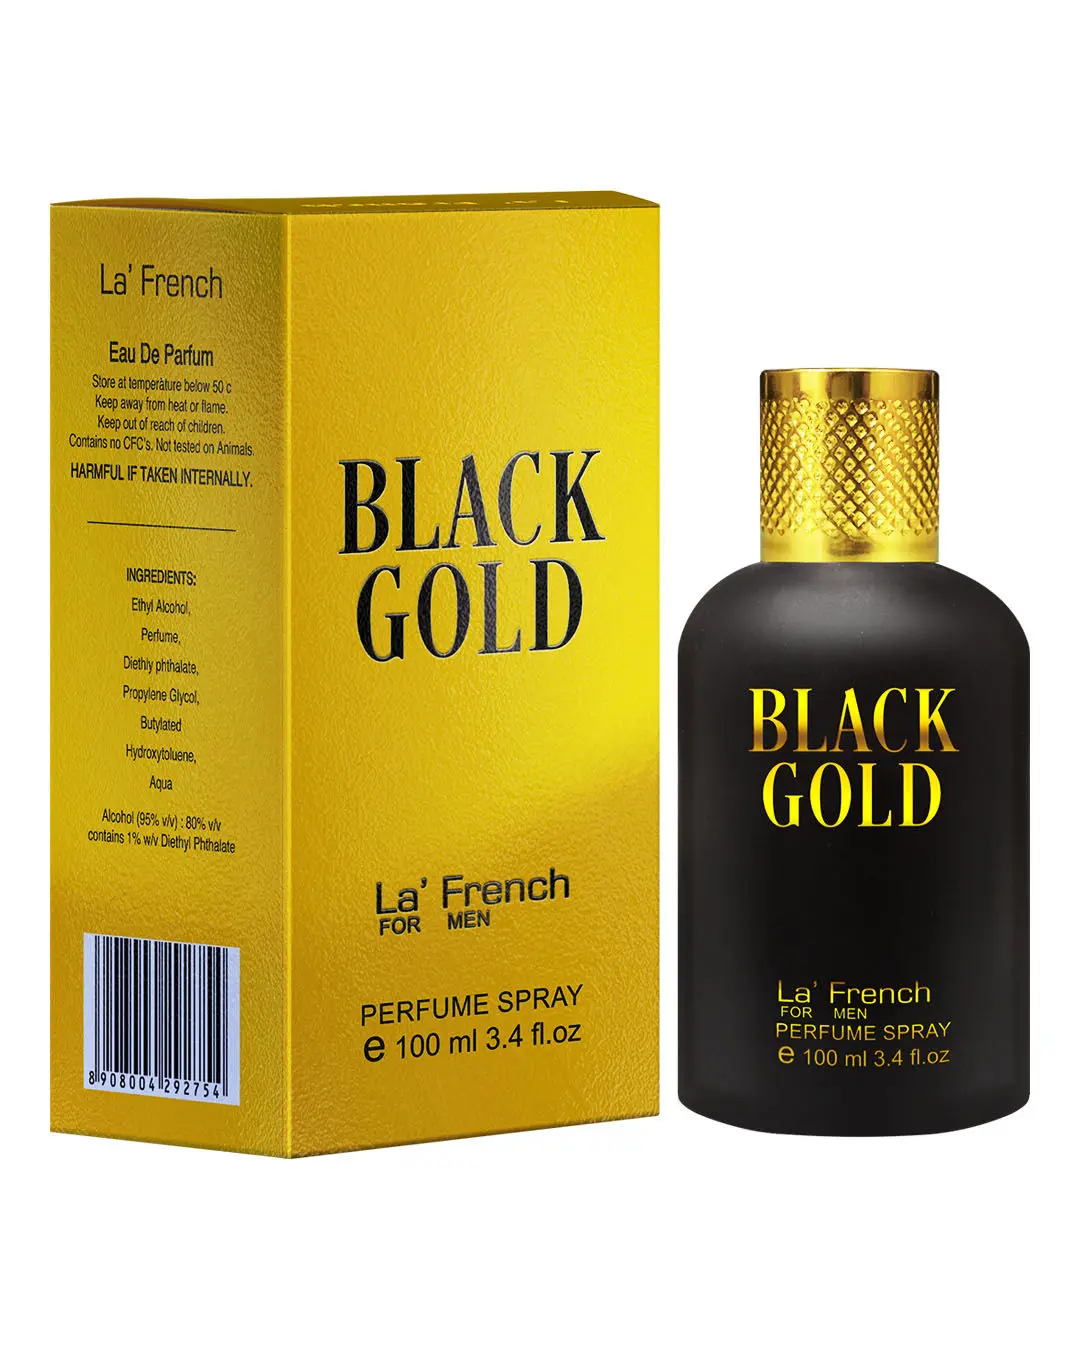 LA' French Black Gold Perfume By La' French, Eau De Parfum (100 ml) - Ideal For Men